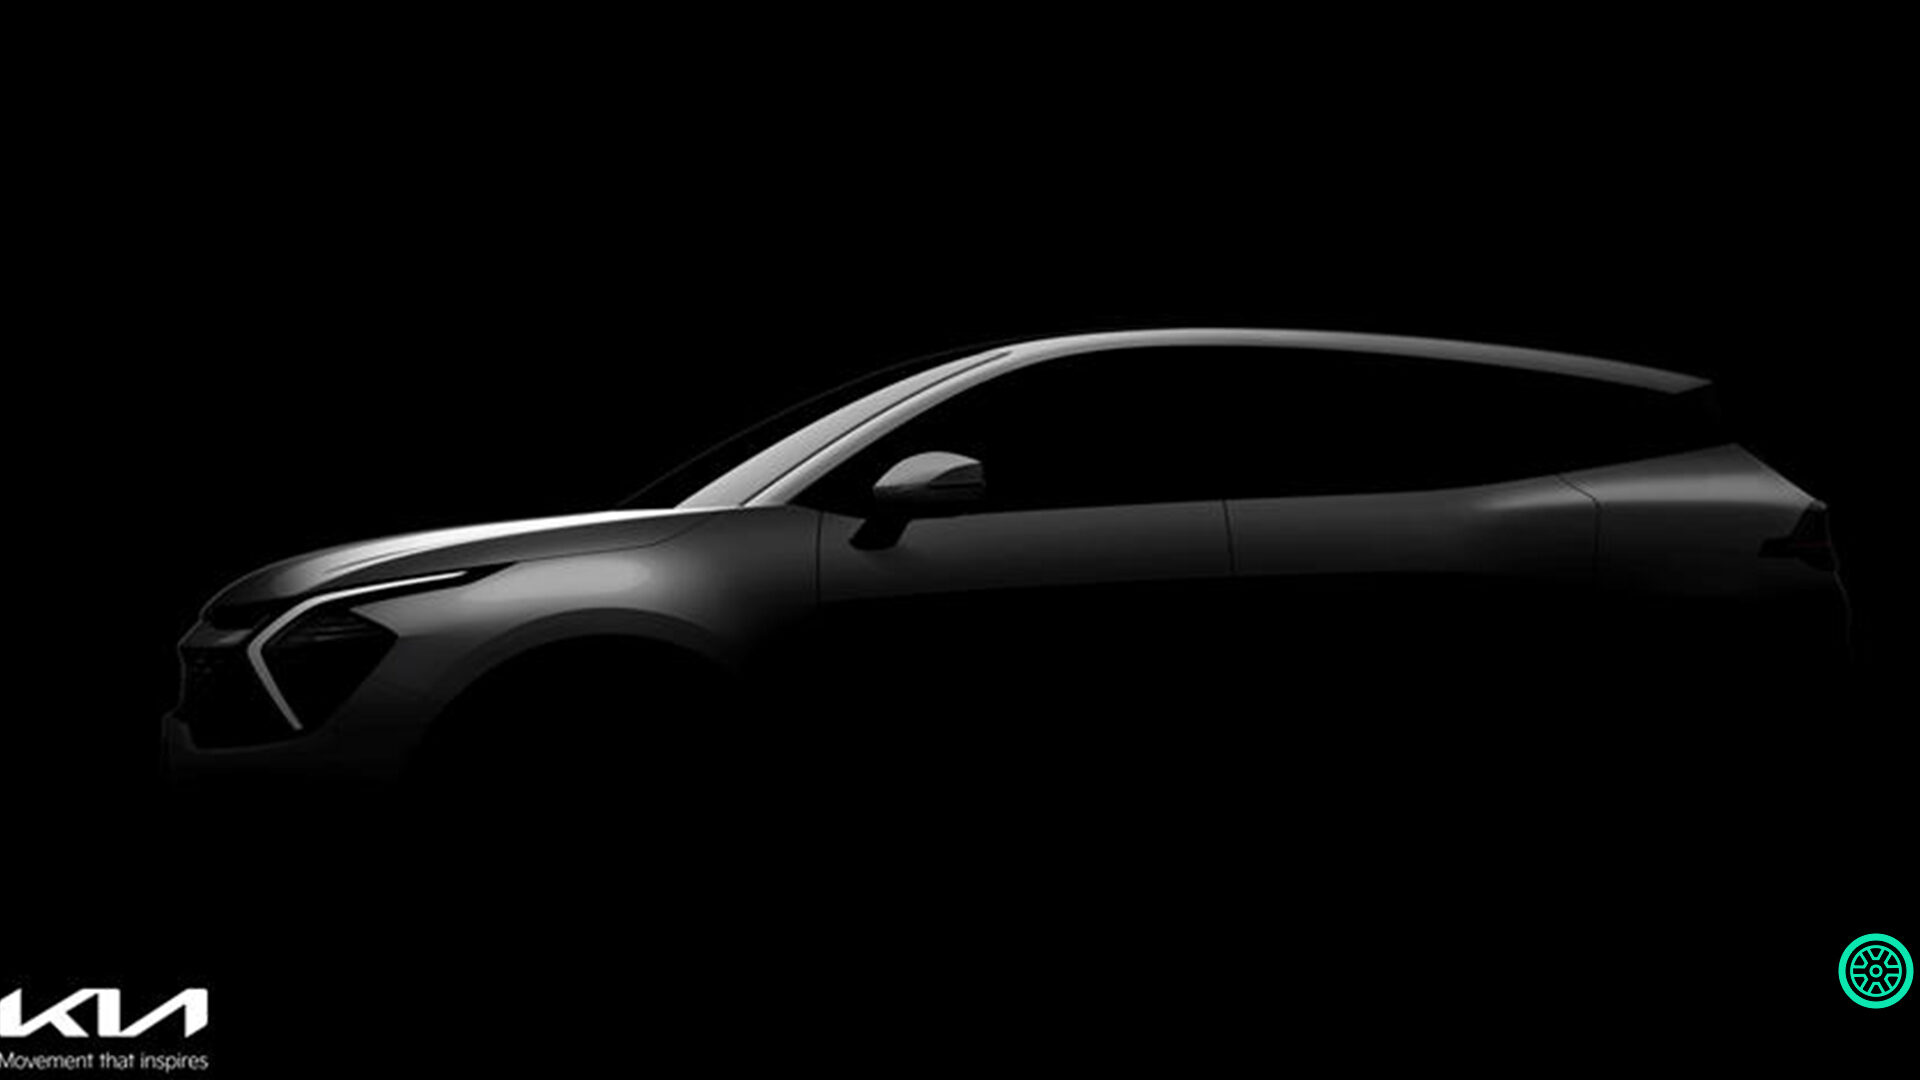 2022 Kia Sportage SUV teaser görüntüleri paylaşıldı 6